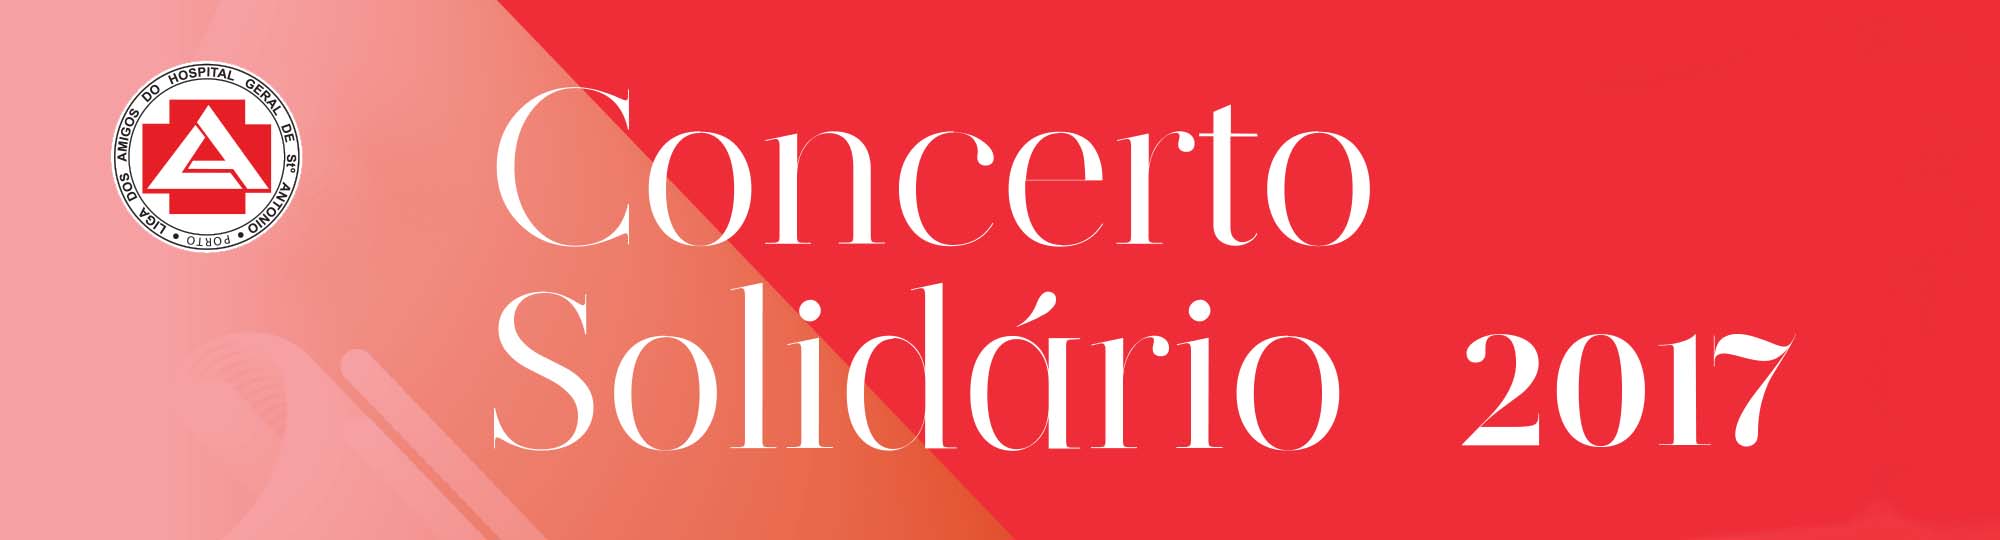 Concerto Solidário 2017
